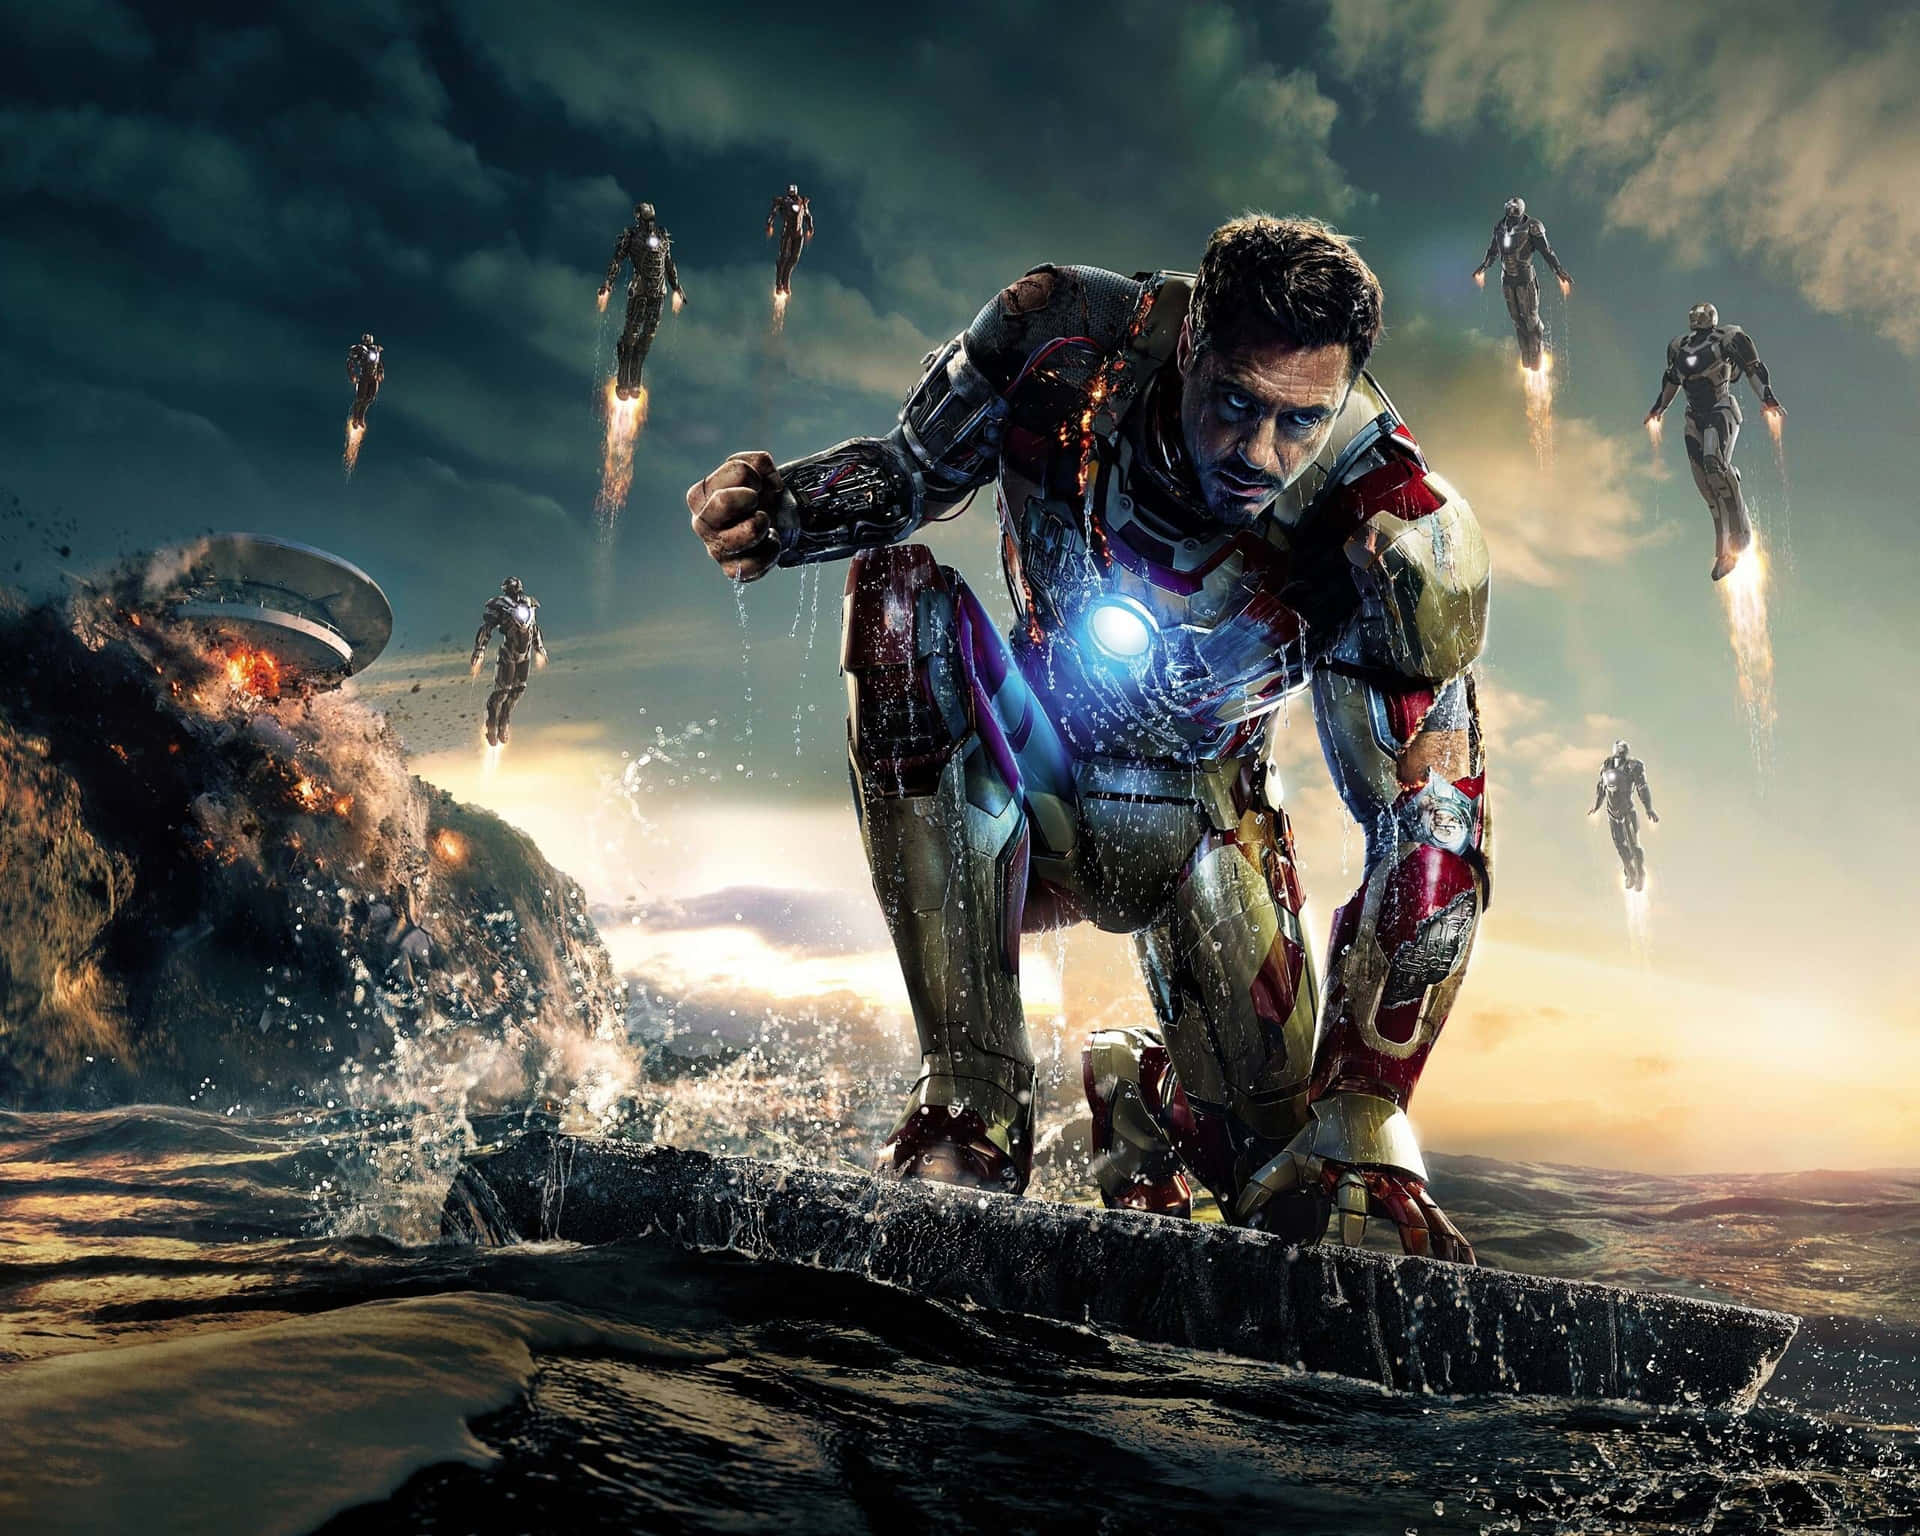 Robert Downey Jr. As Iron Man